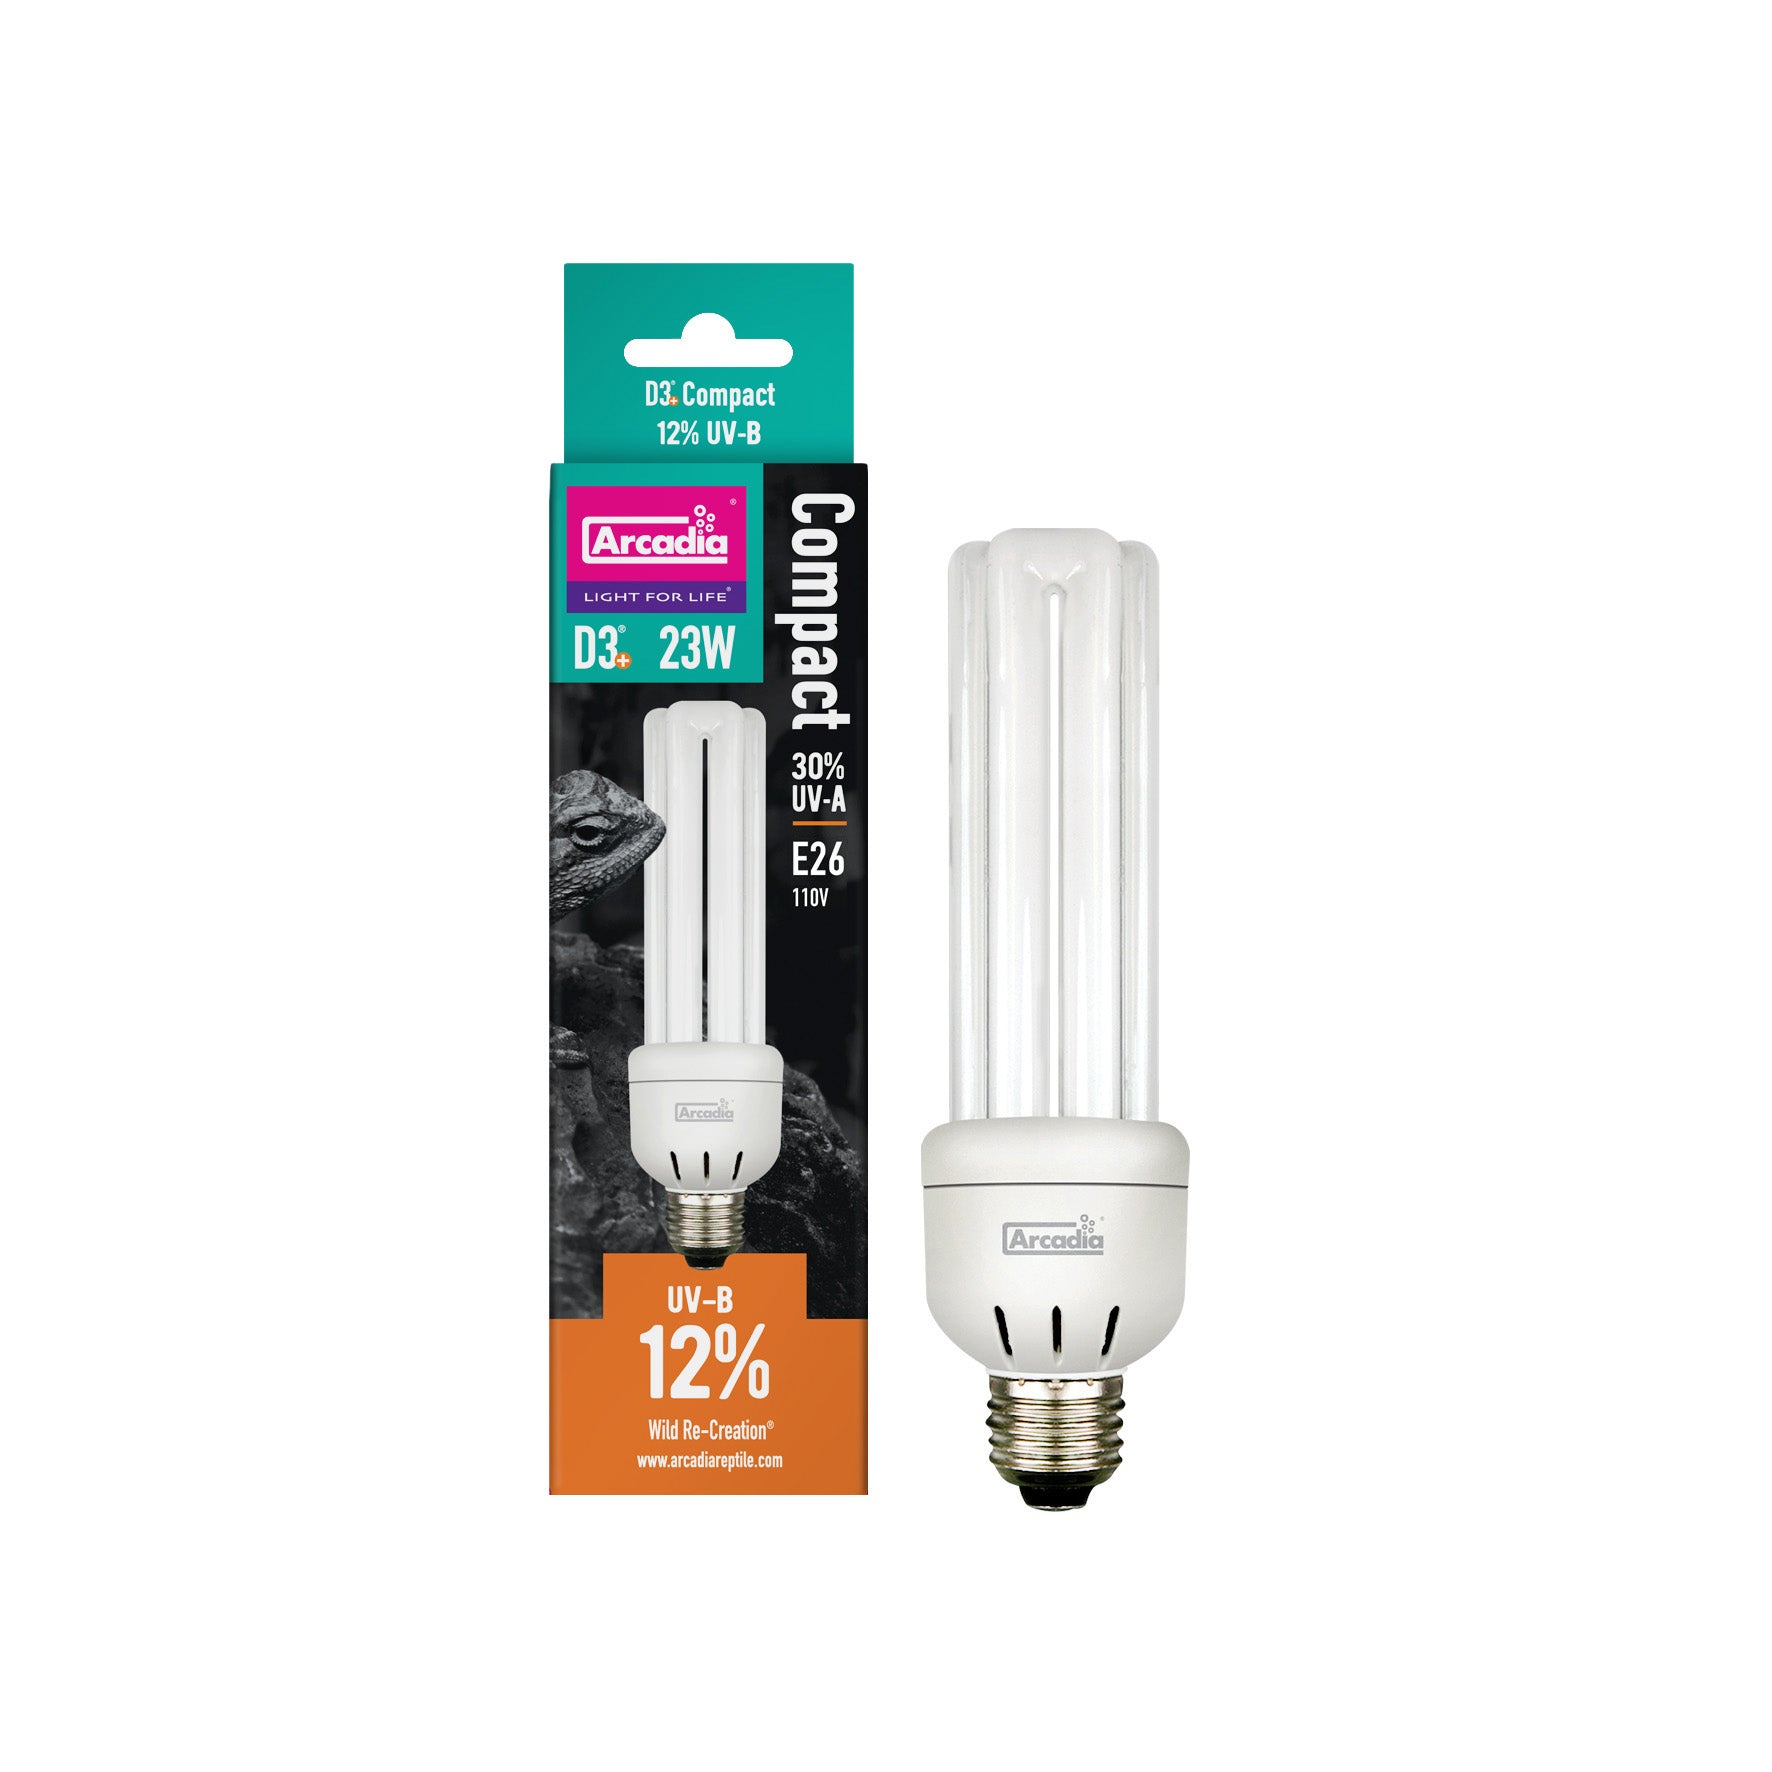 Arcadia D3 12% UVB Compact Bulb